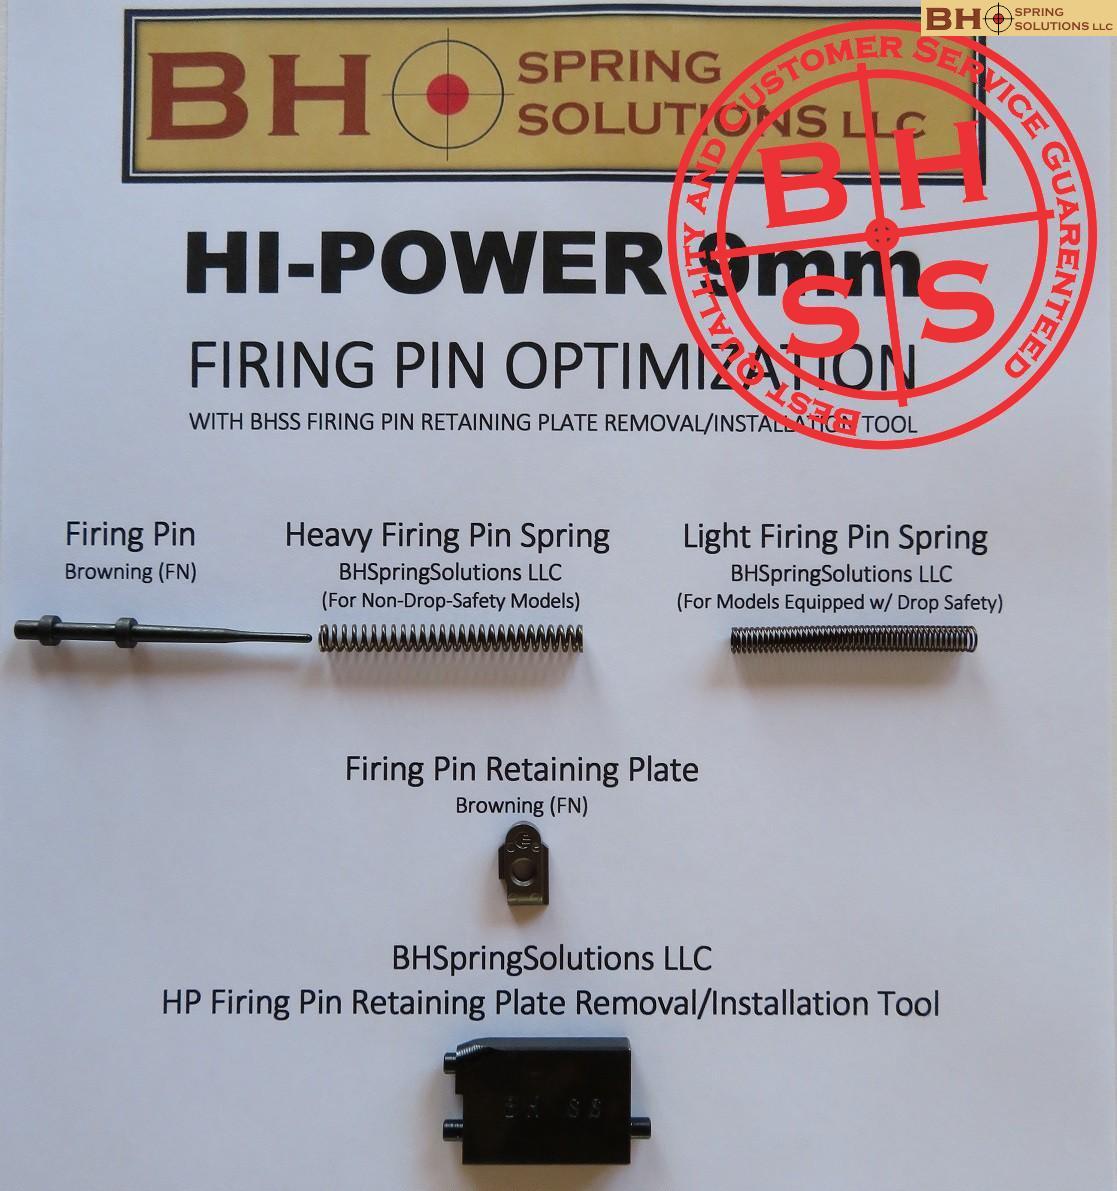 HiPower 9mm Firing Pin Optimization Kit